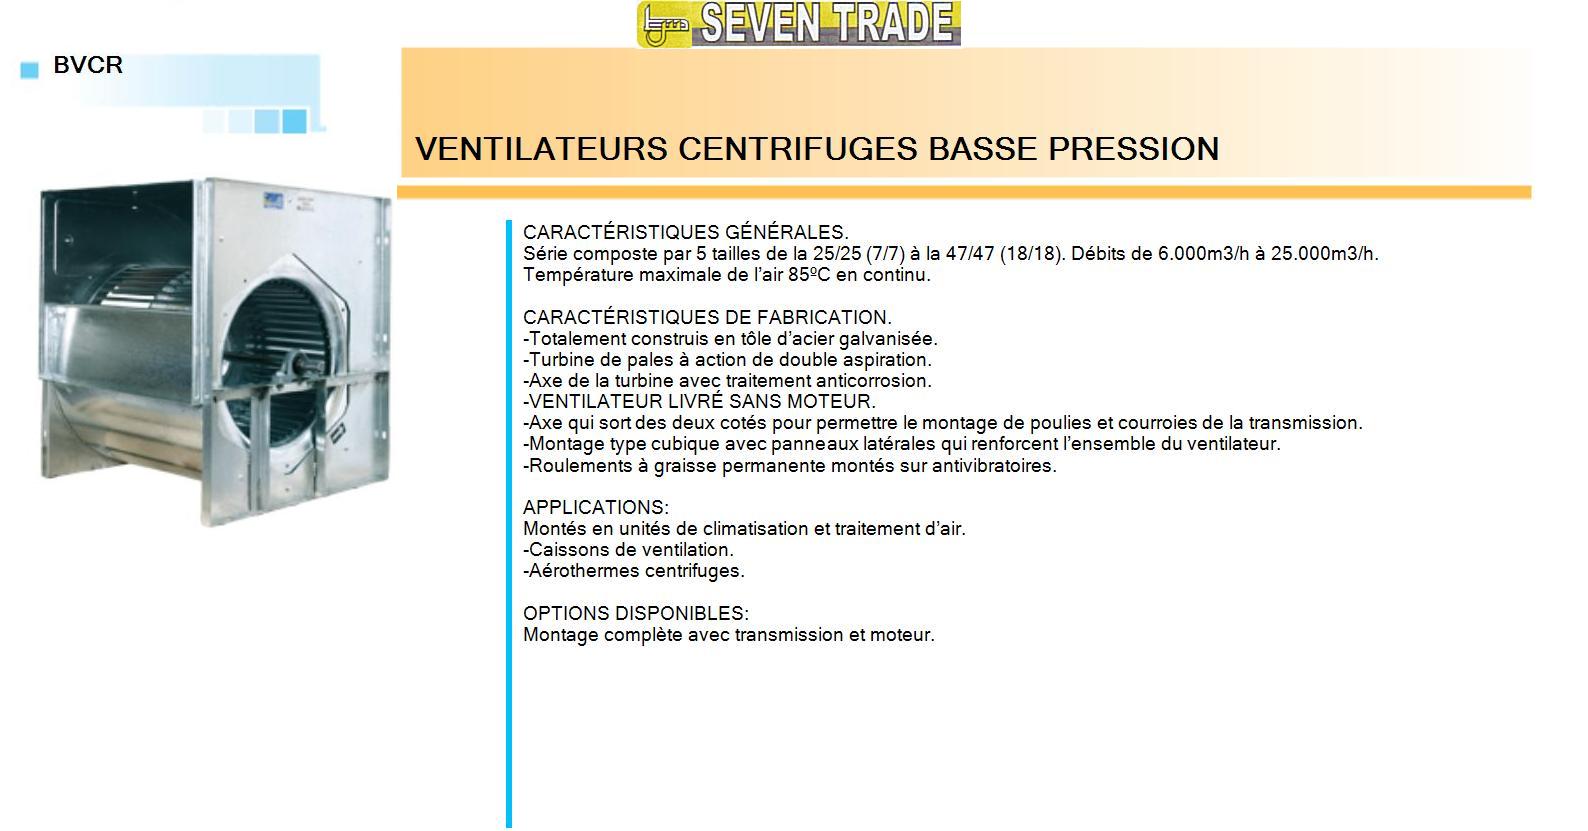 Ventilateurs centrifuges basse pression